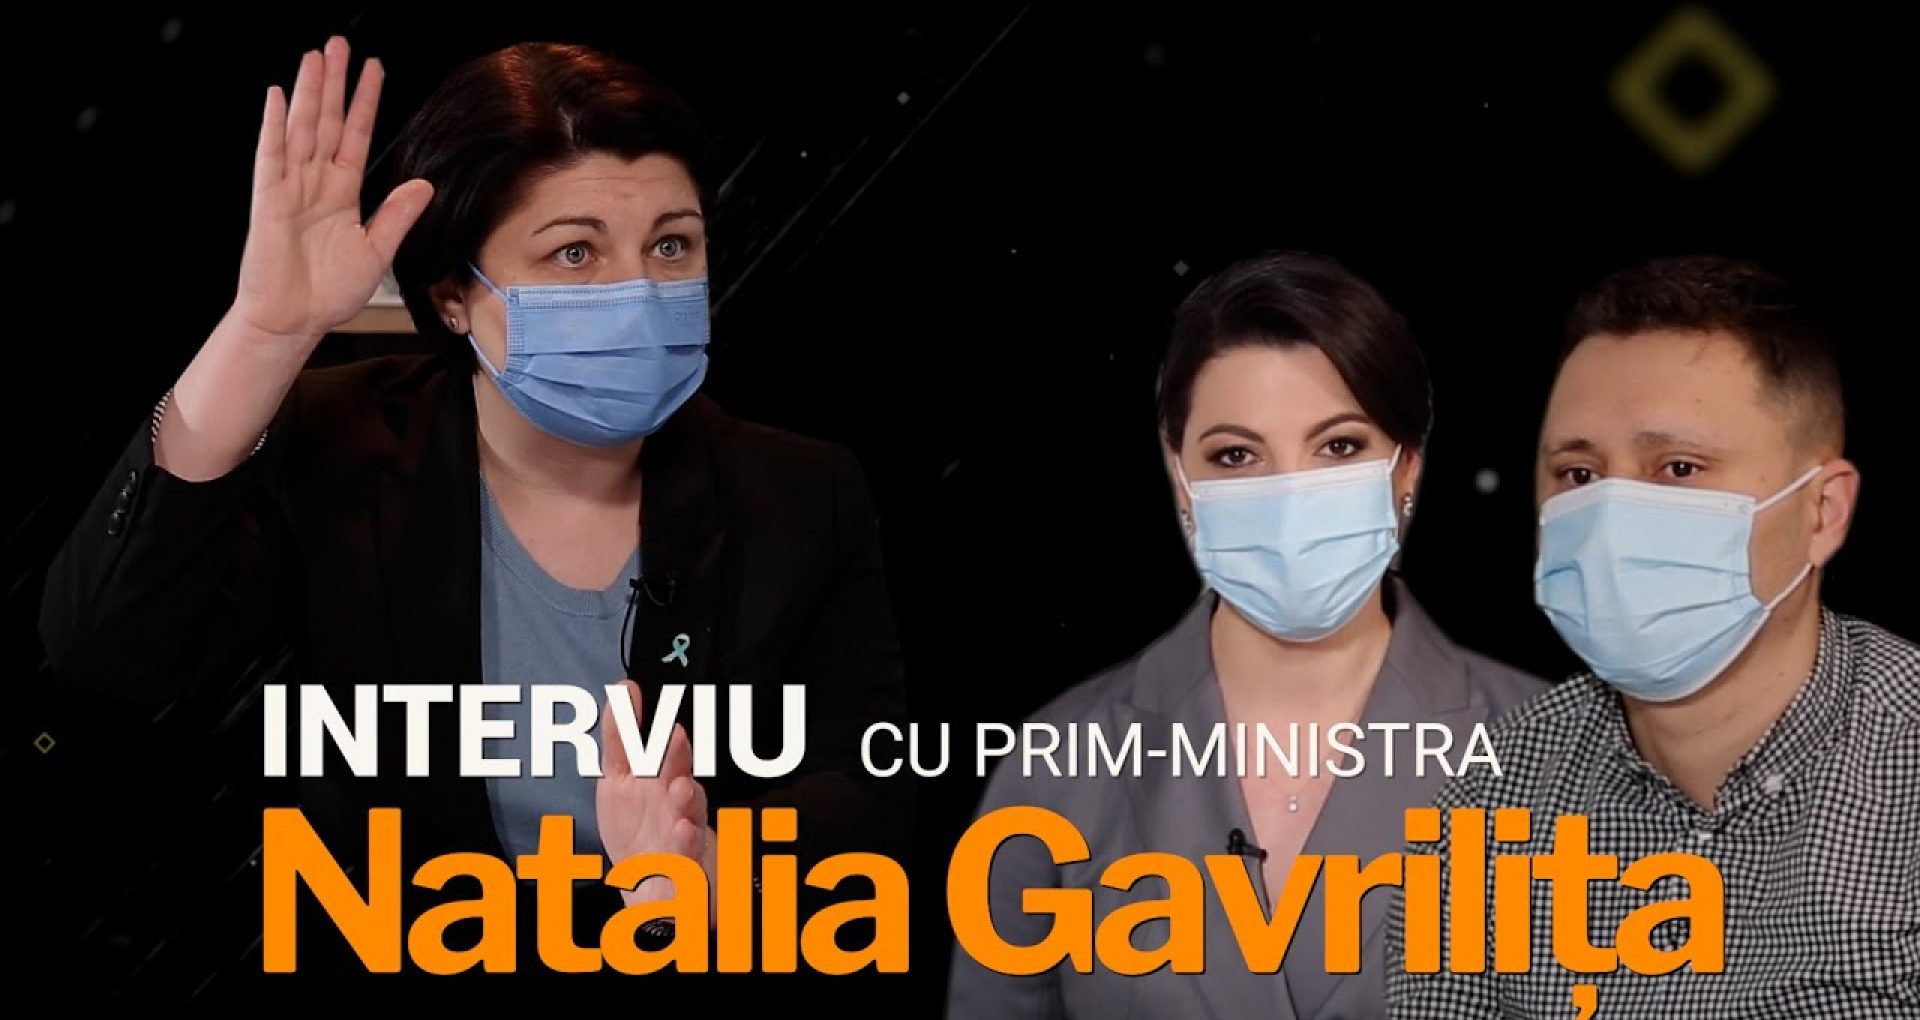 INTERVIU/ Prim-ministra Natalia Gavrilița, despre noile restricții anti-Covid, criza gazelor și activitatea Guvernului la șase luni de la învestire: „Într-adevăr, sunt timpuri dificile”